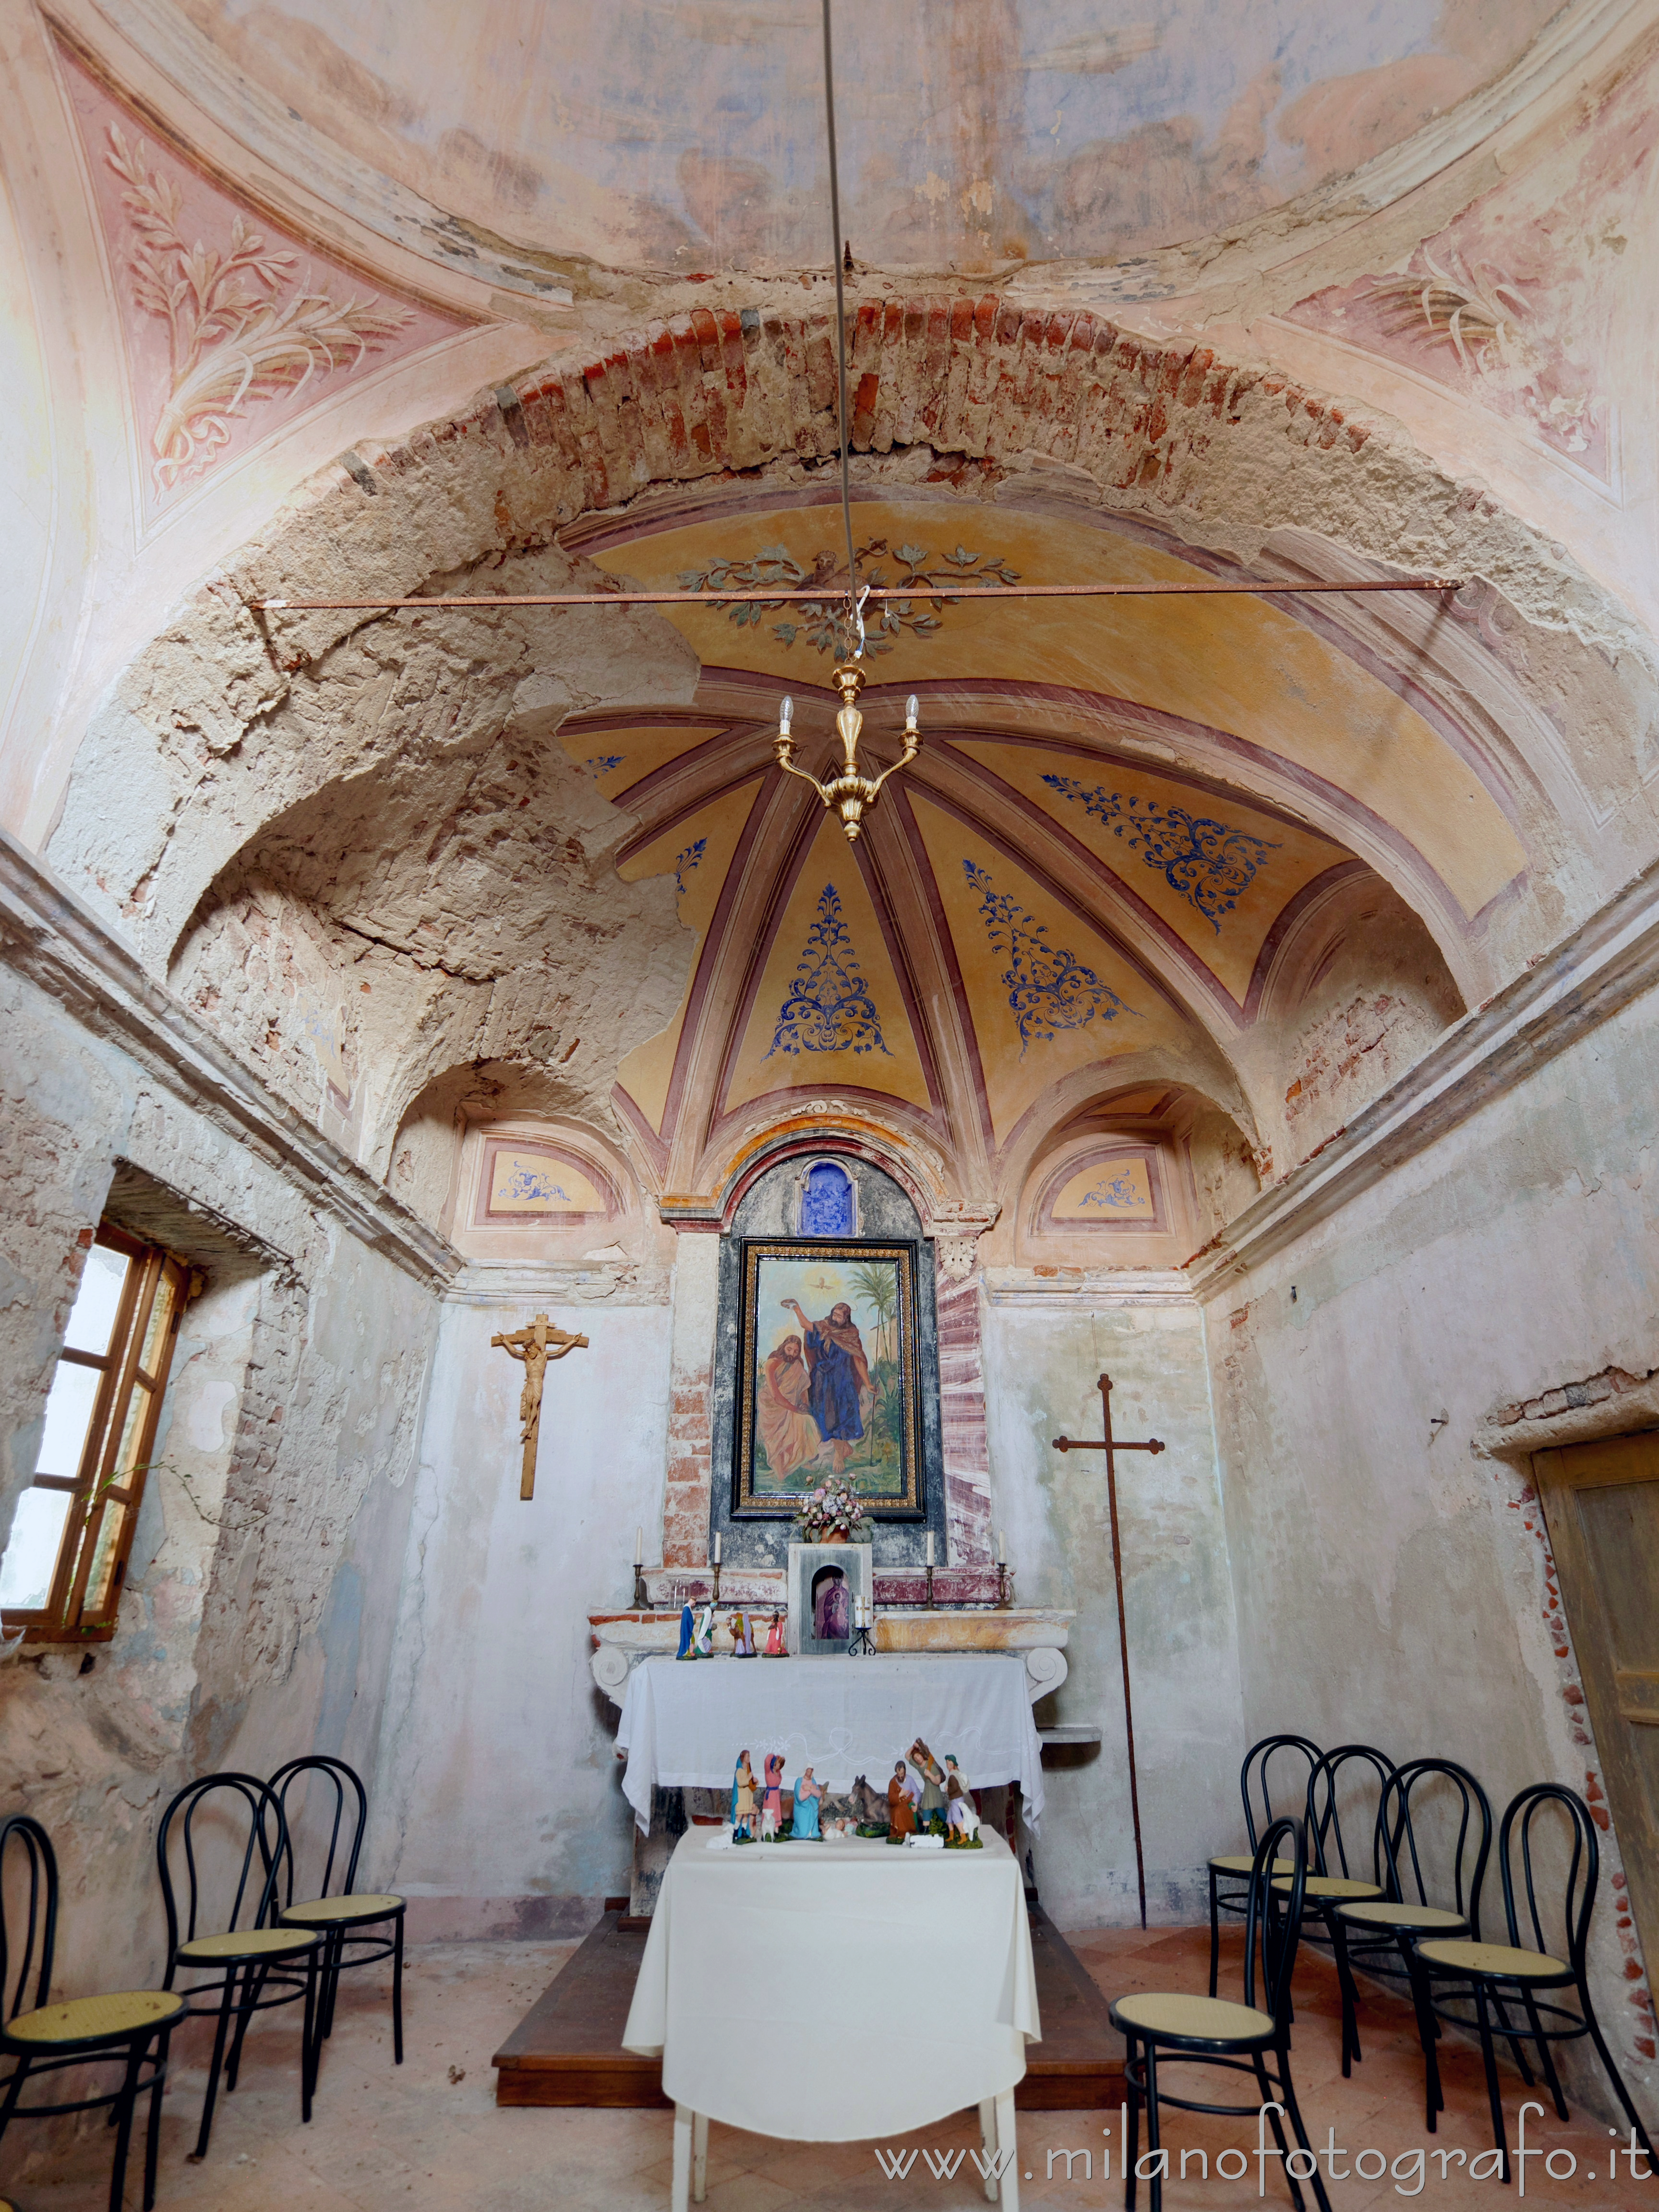 Cossato (Biella, Italy): Interior of the Chapel of St. John in the Castle of Castellengo - Cossato (Biella, Italy)